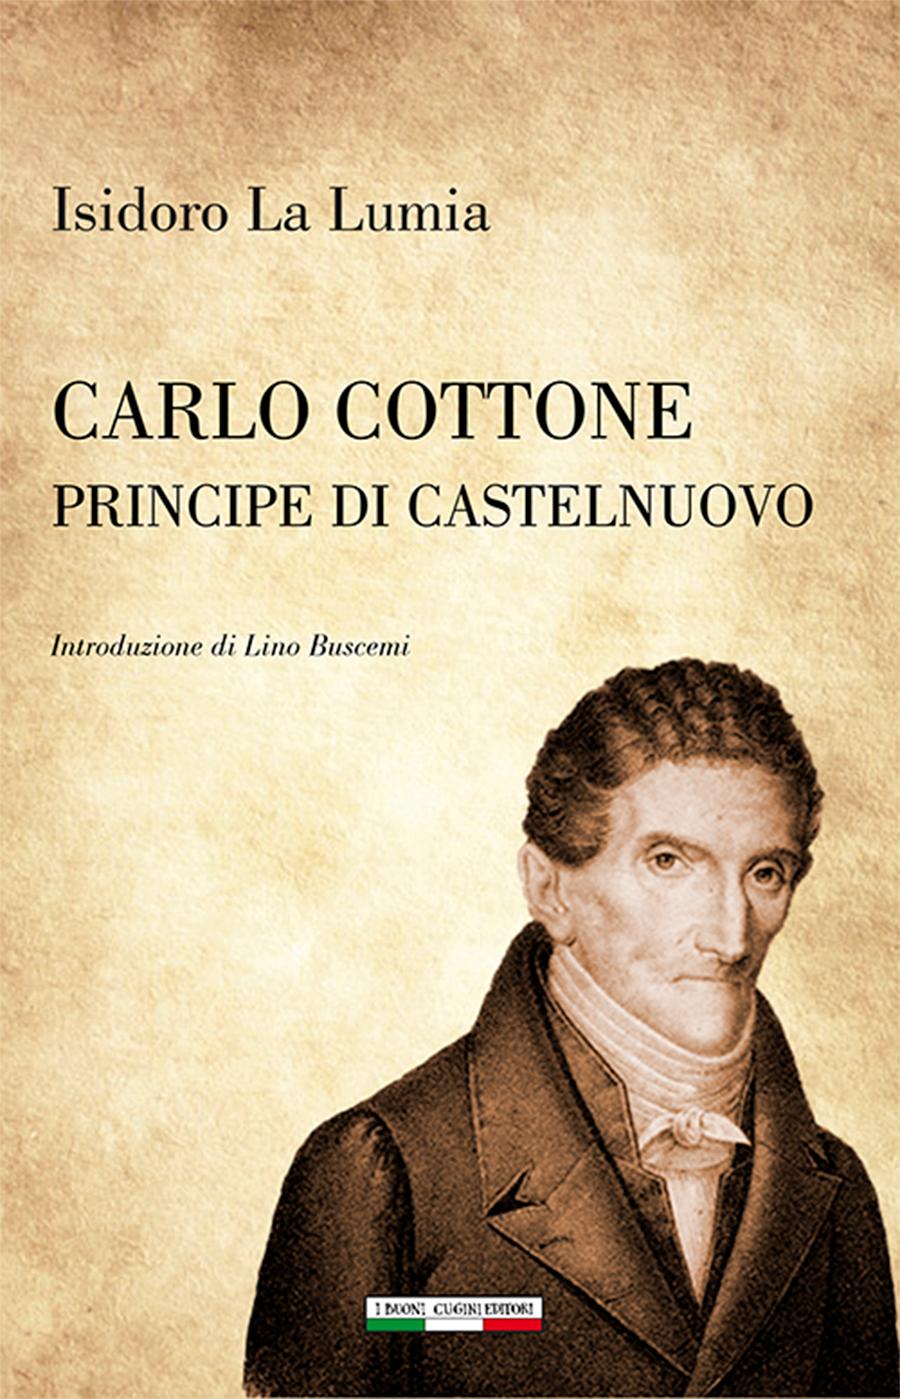 Carlo Cottone principe di Castelnuovo